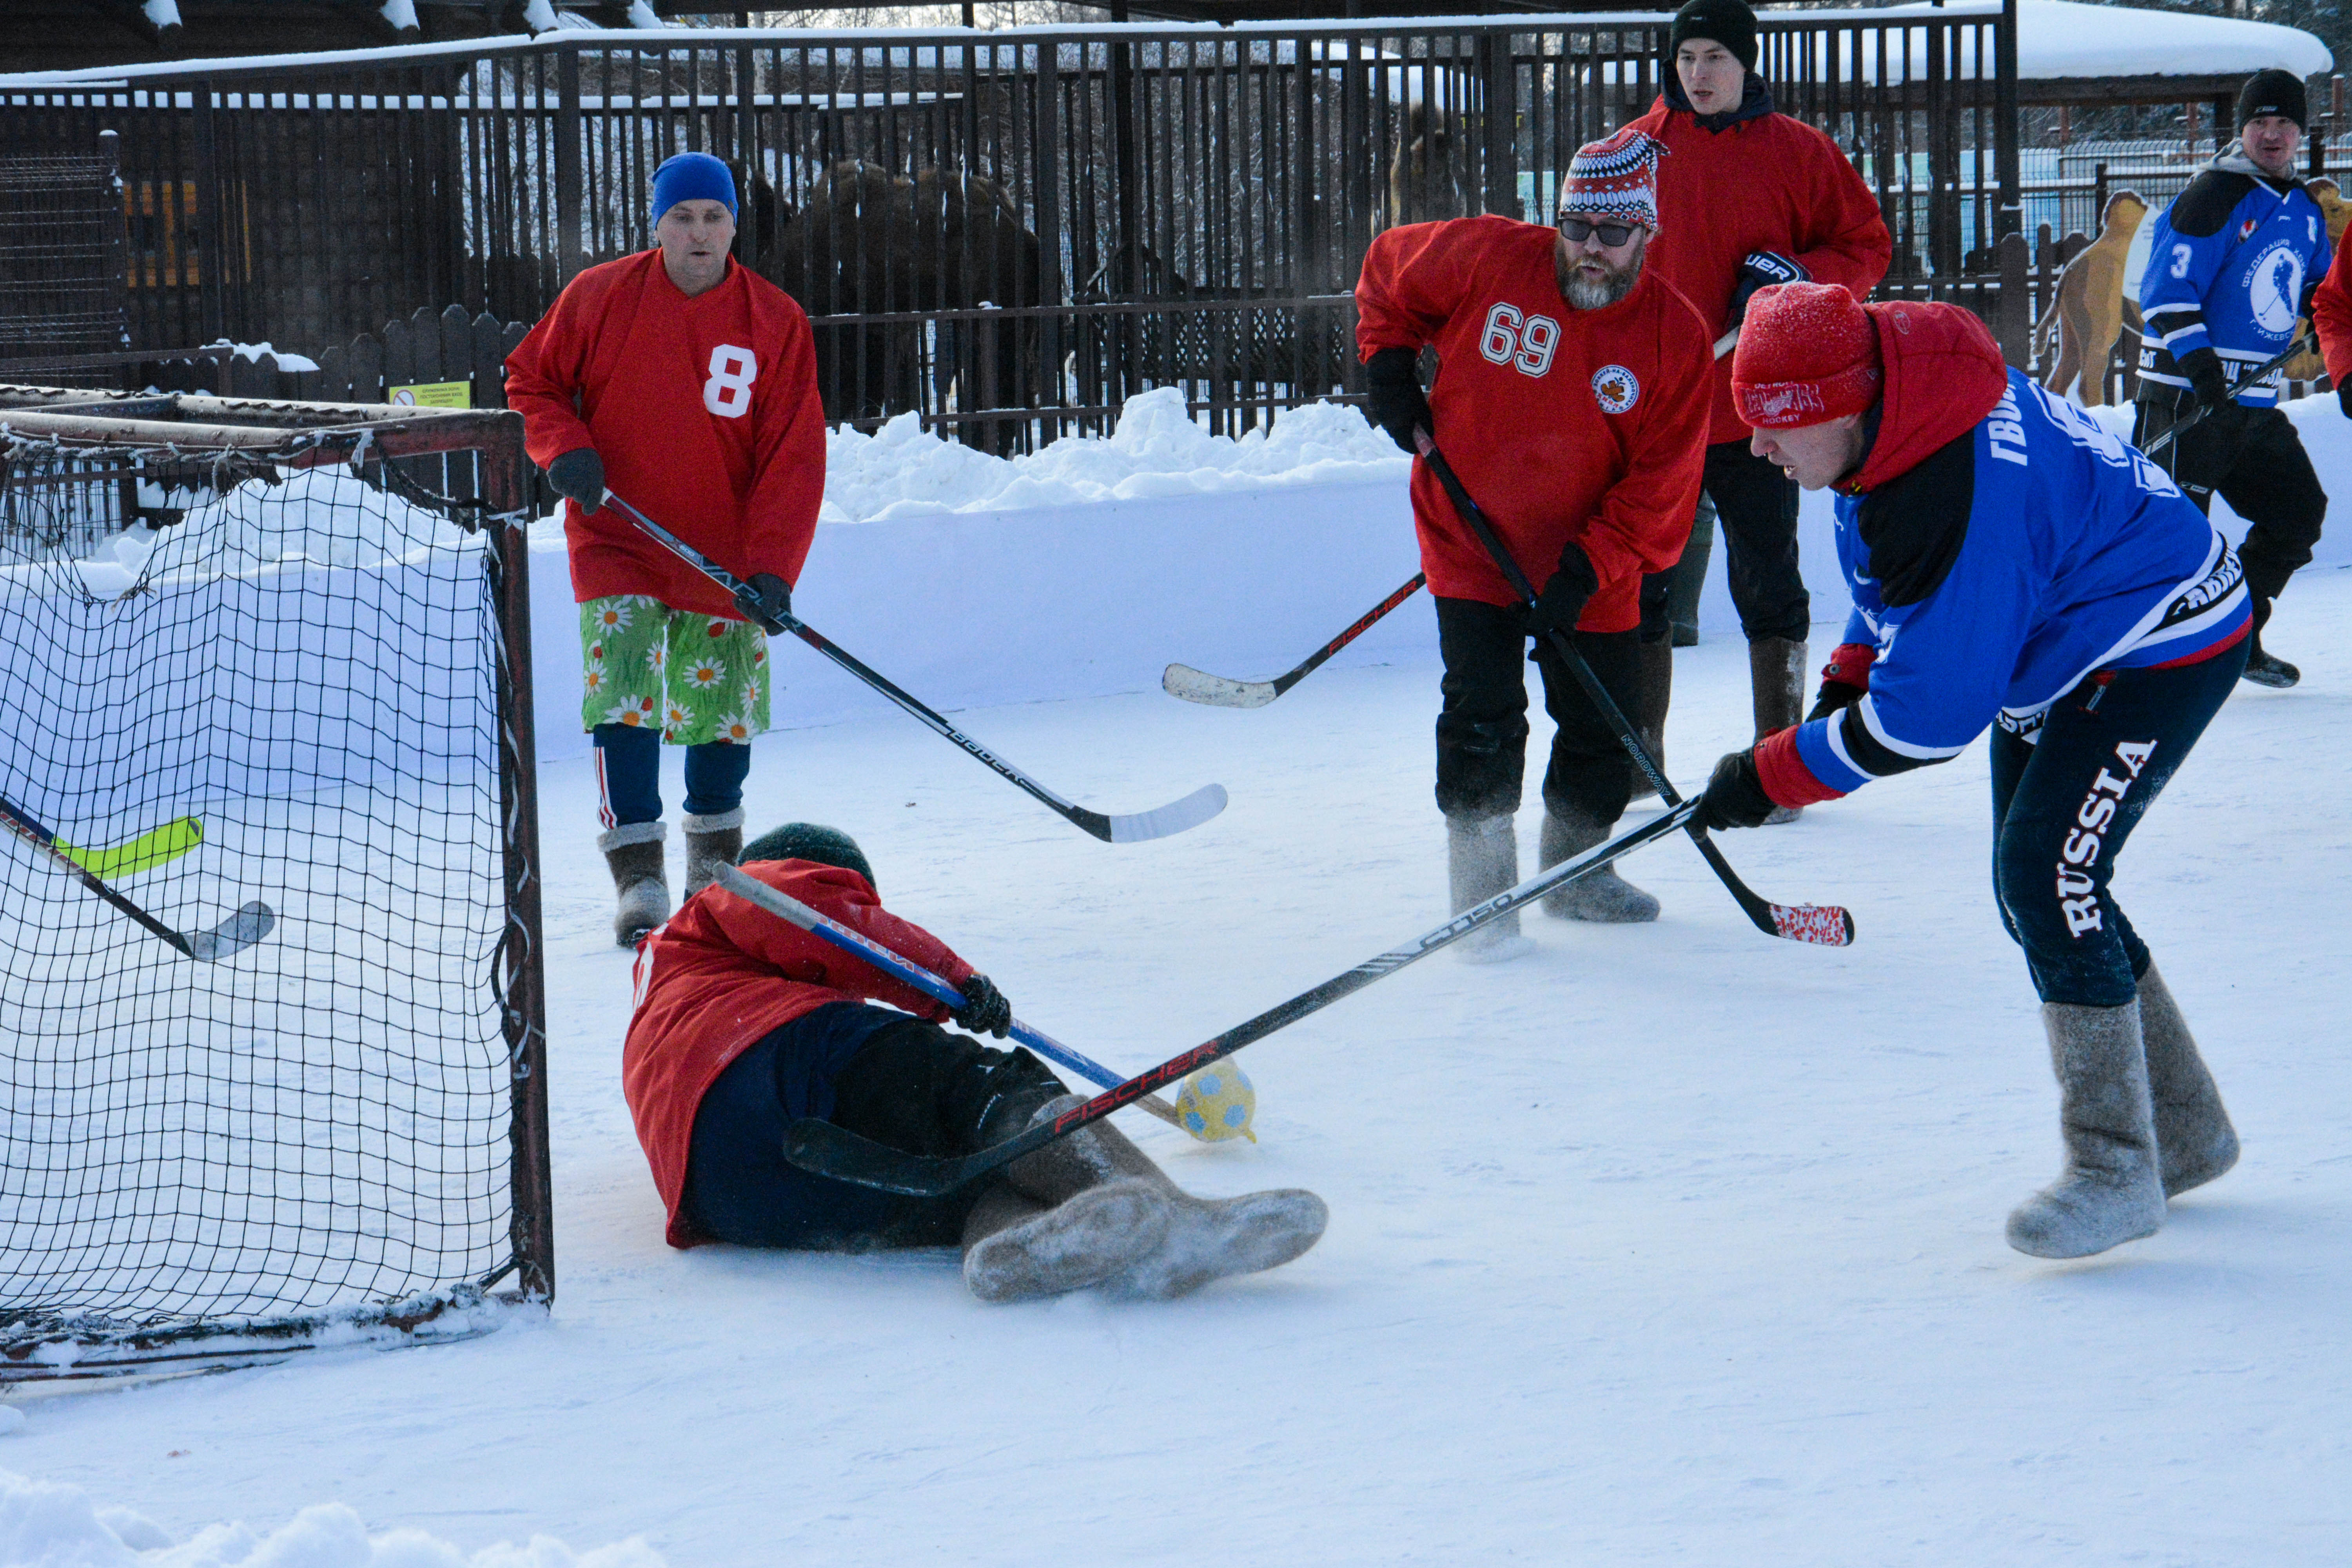 

Чемпионат по хоккею на валенках пройдет в Ижевске среди дошкольников, школьников и взрослых команд

